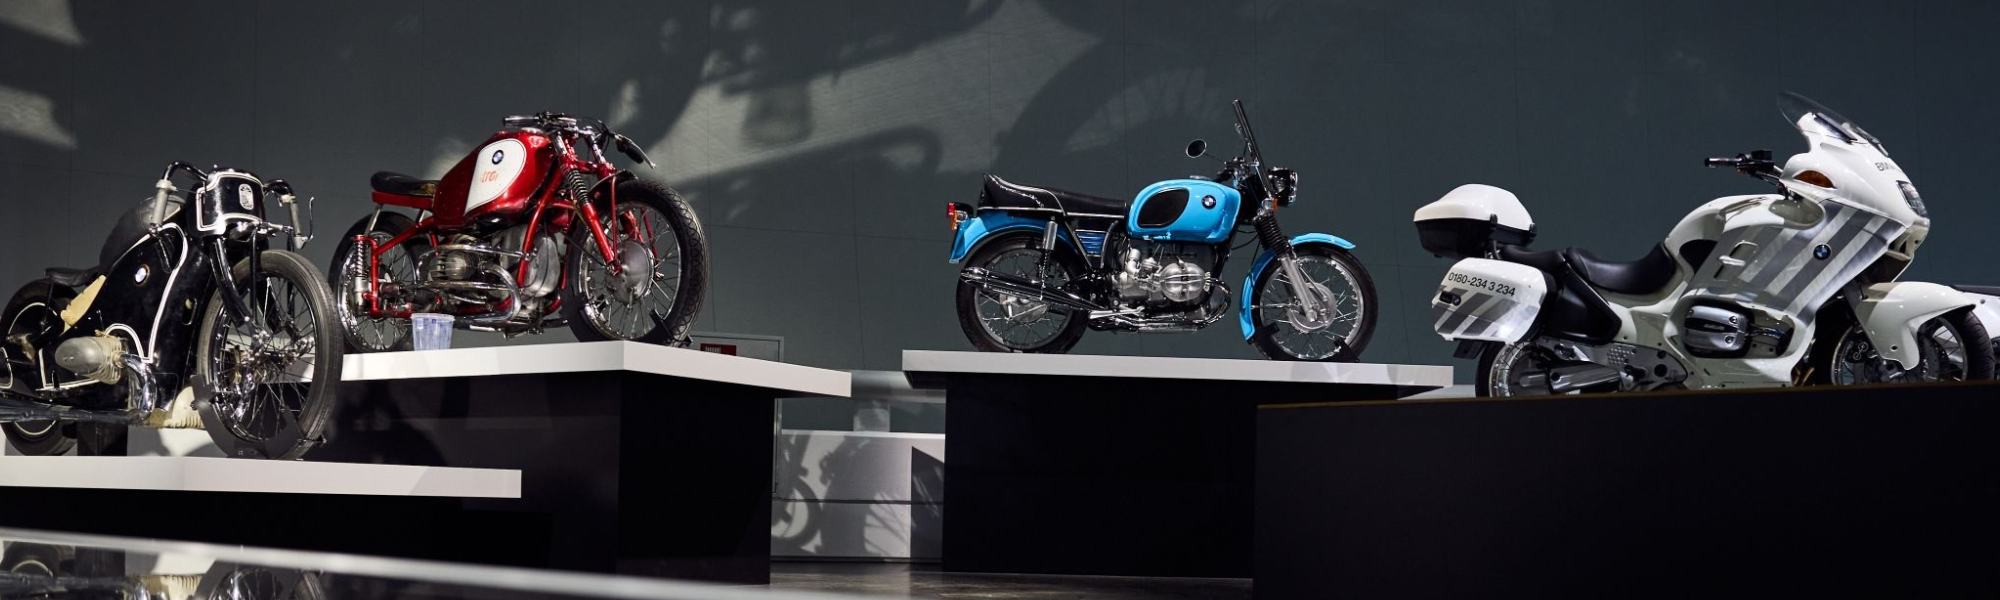 BMW Museum Exhibit Celebrates 100 Years of BMW Motorrad